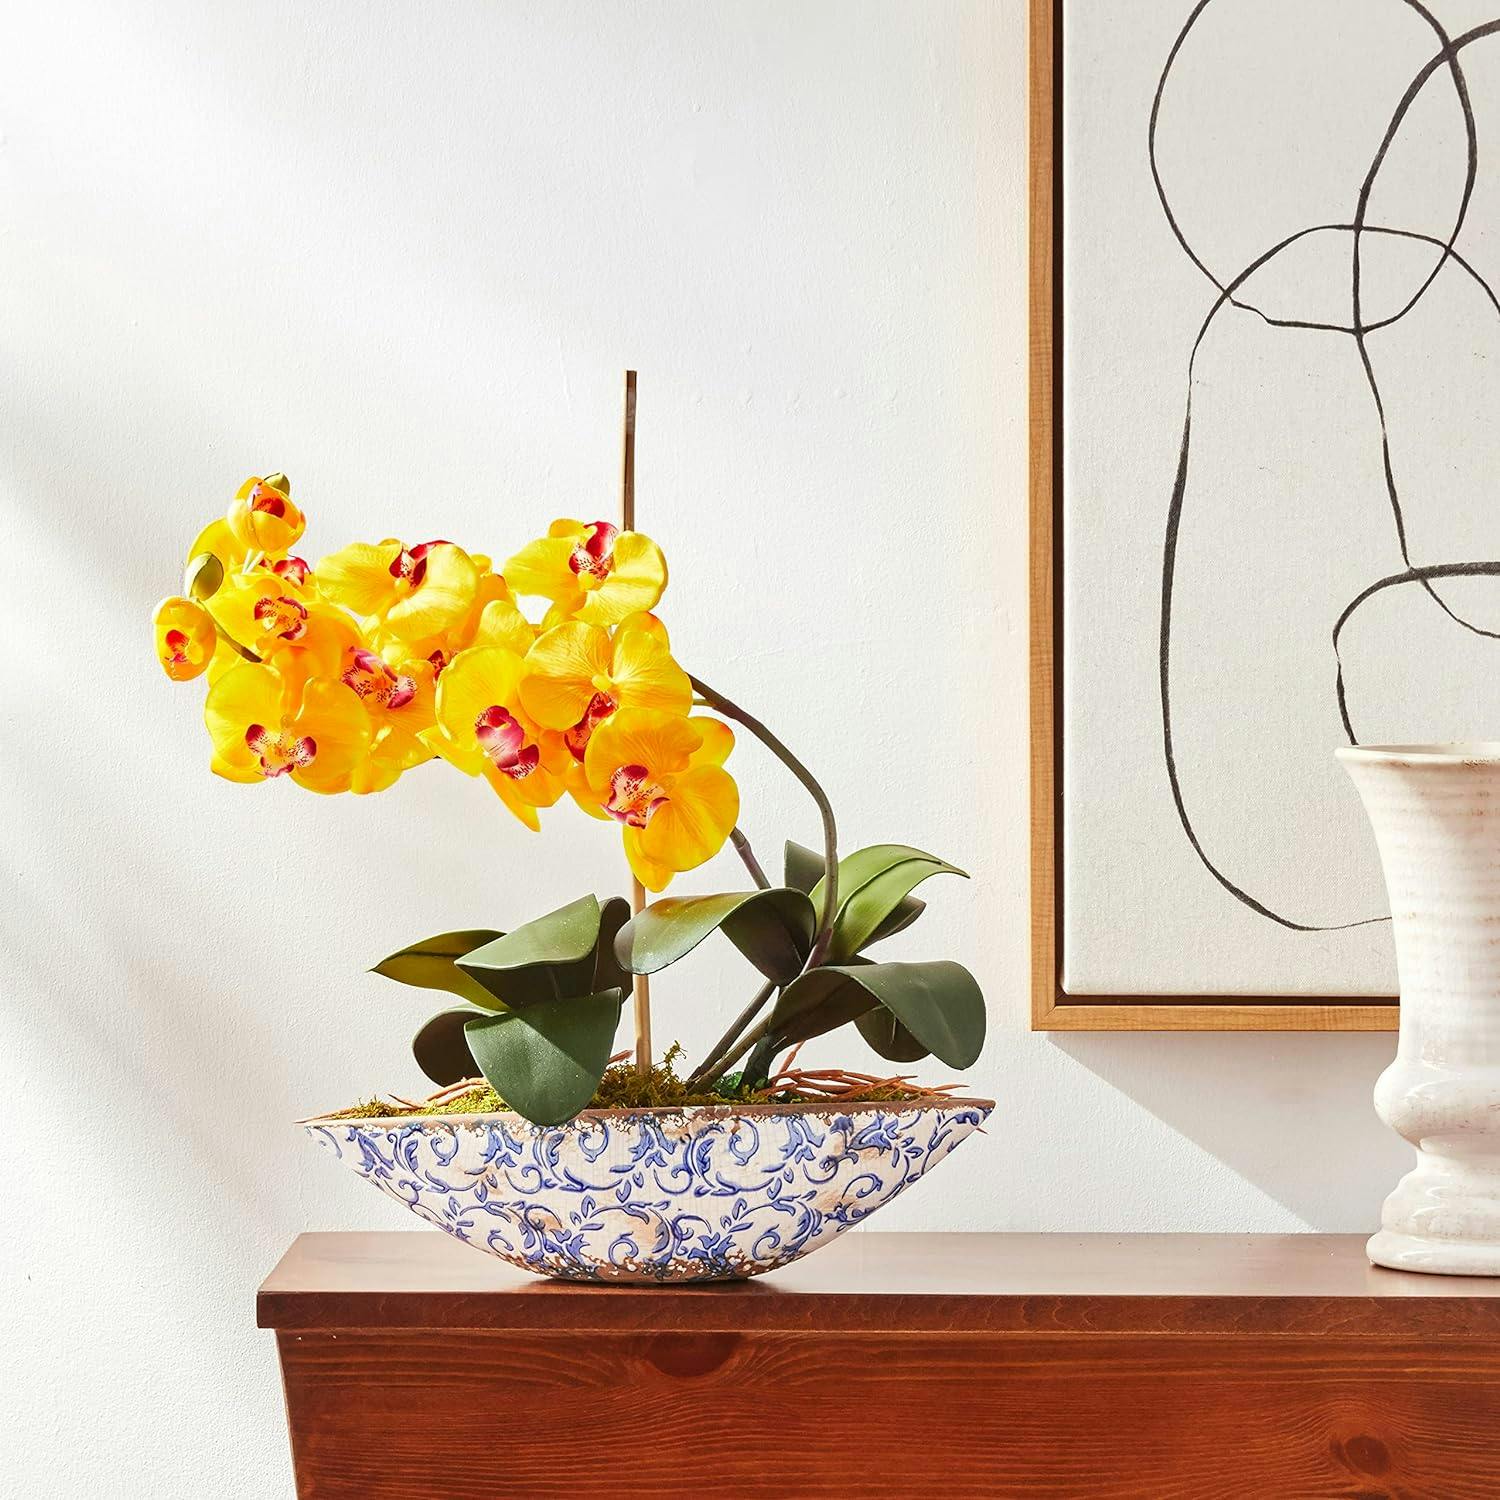 Elegant Summer Orchid 18.5" Artificial Arrangement in Yellow